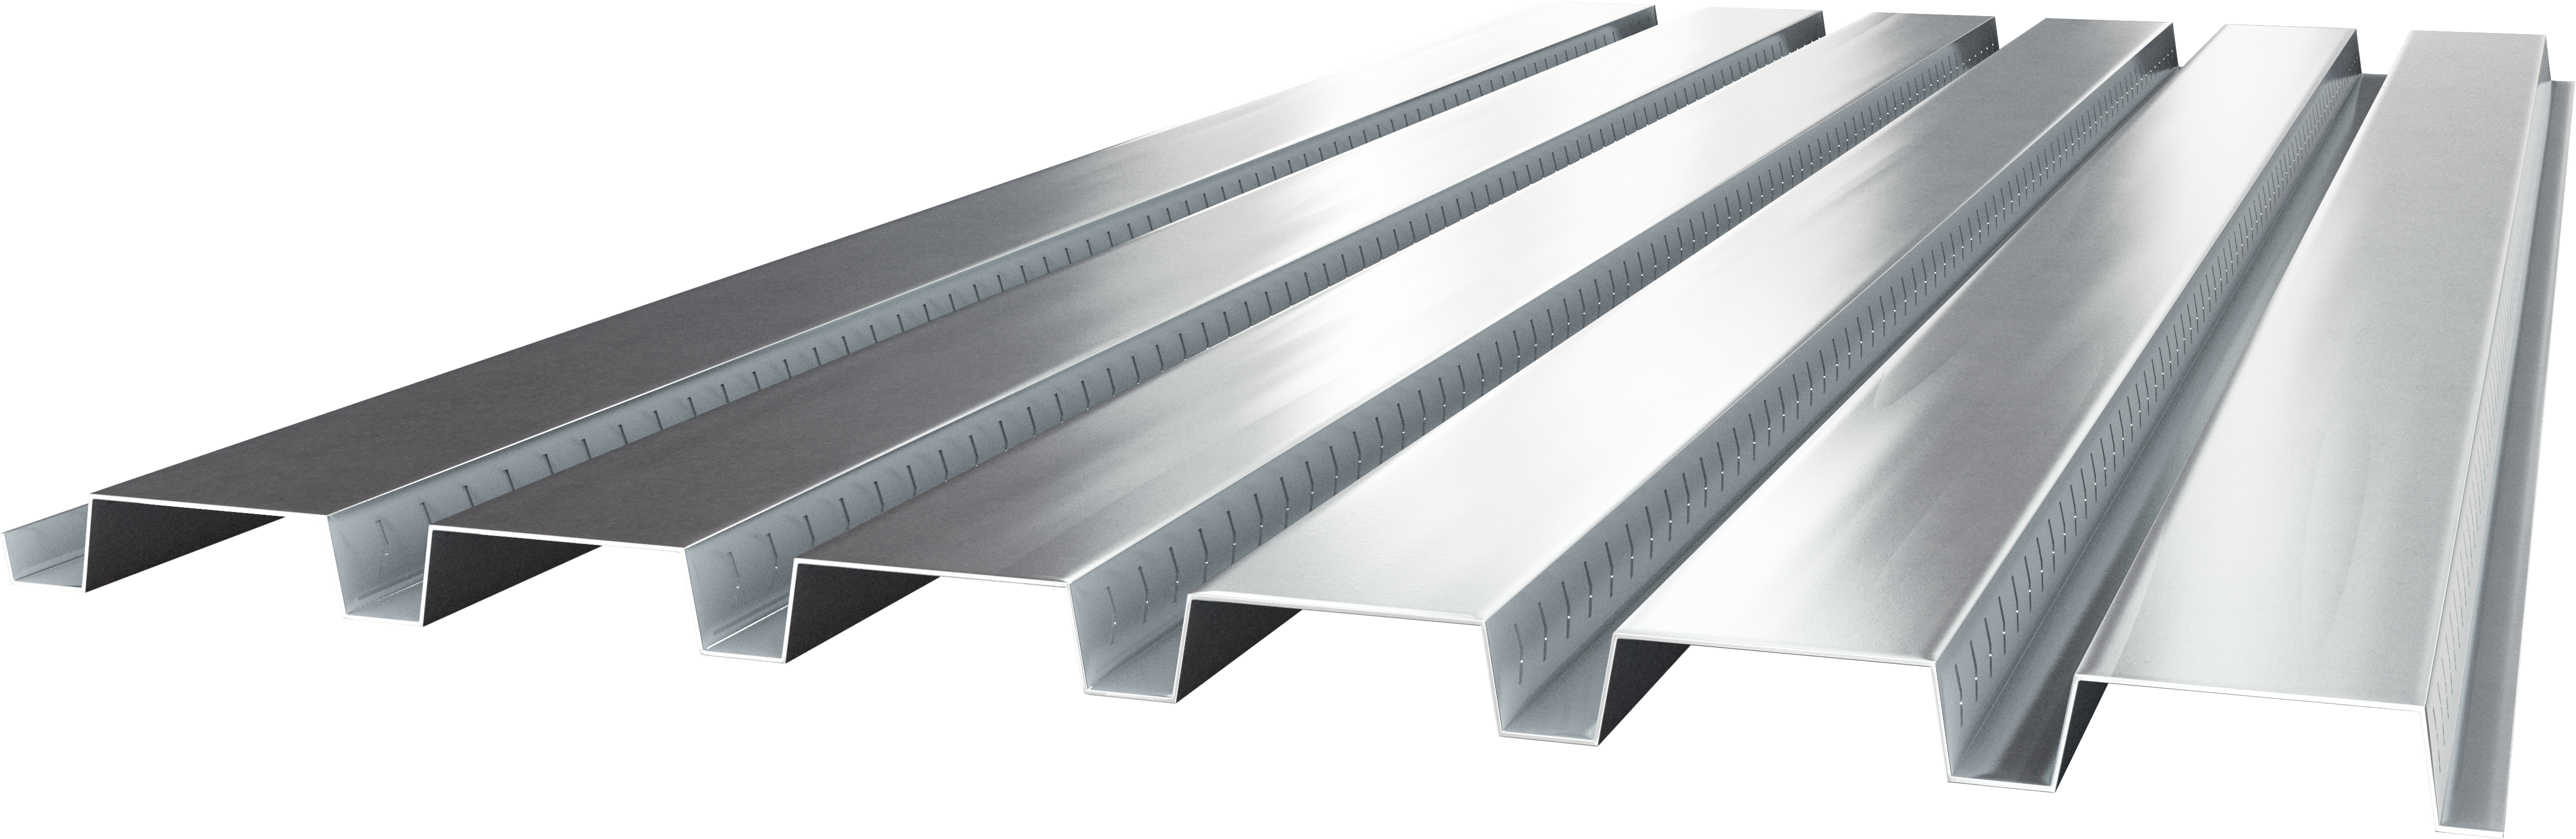 Metal Floor Deck